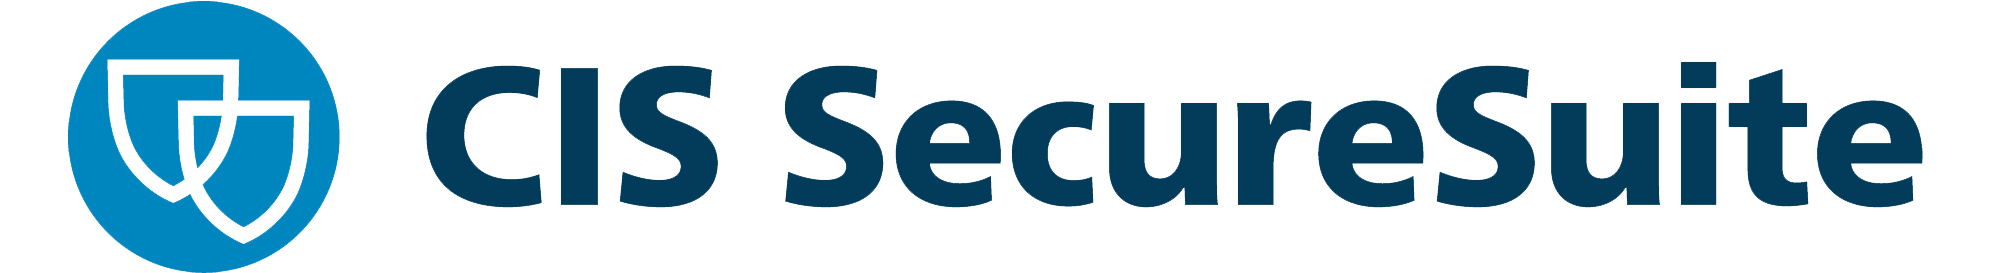 CIS SecureSuite Product Vendor